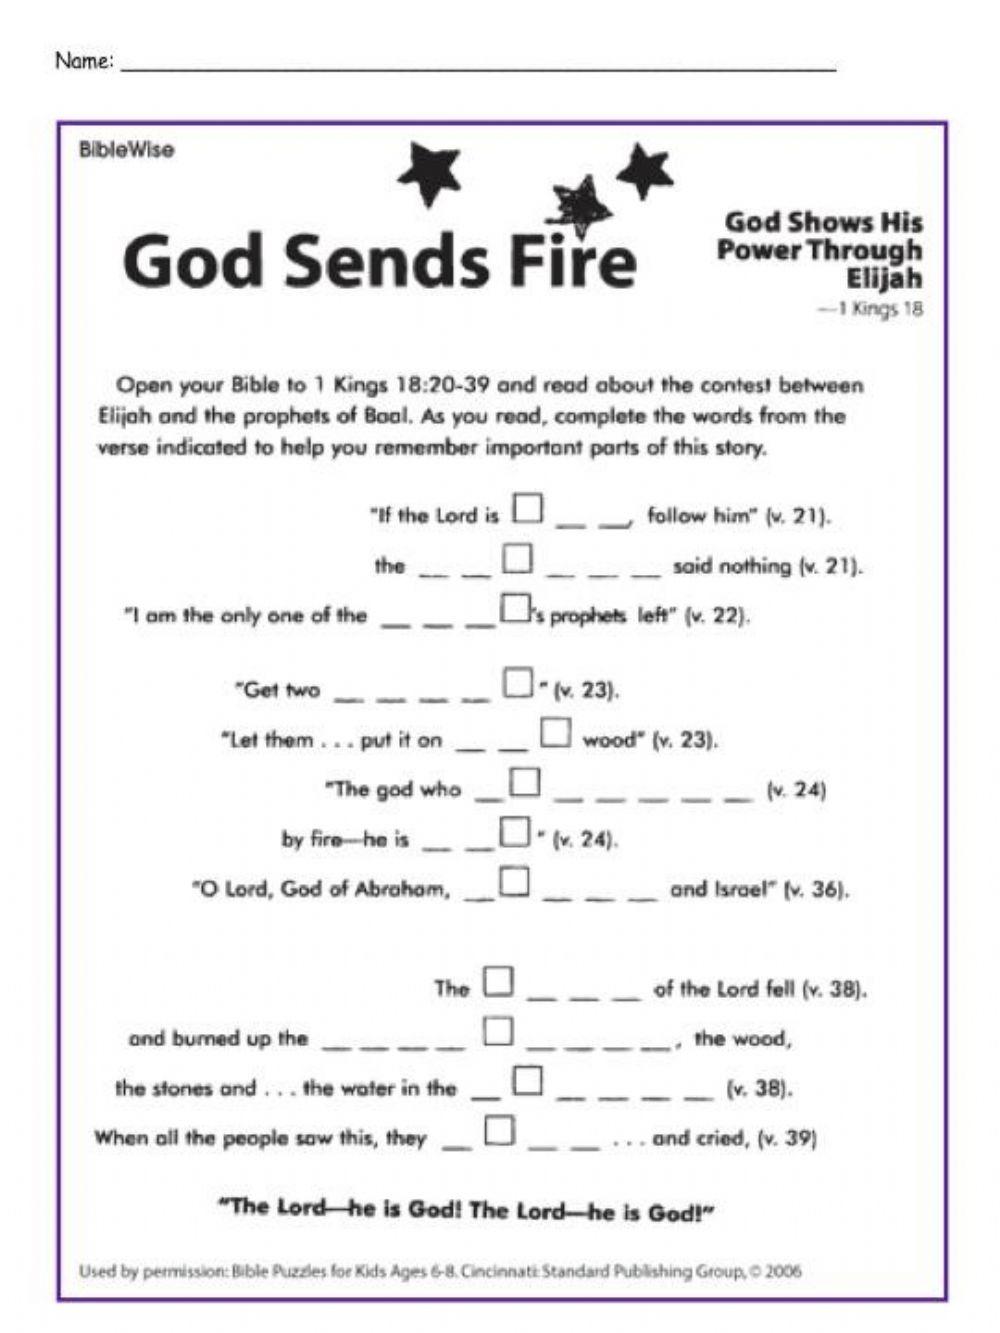 God Sends Fire (1 Kings 18: 20-39)